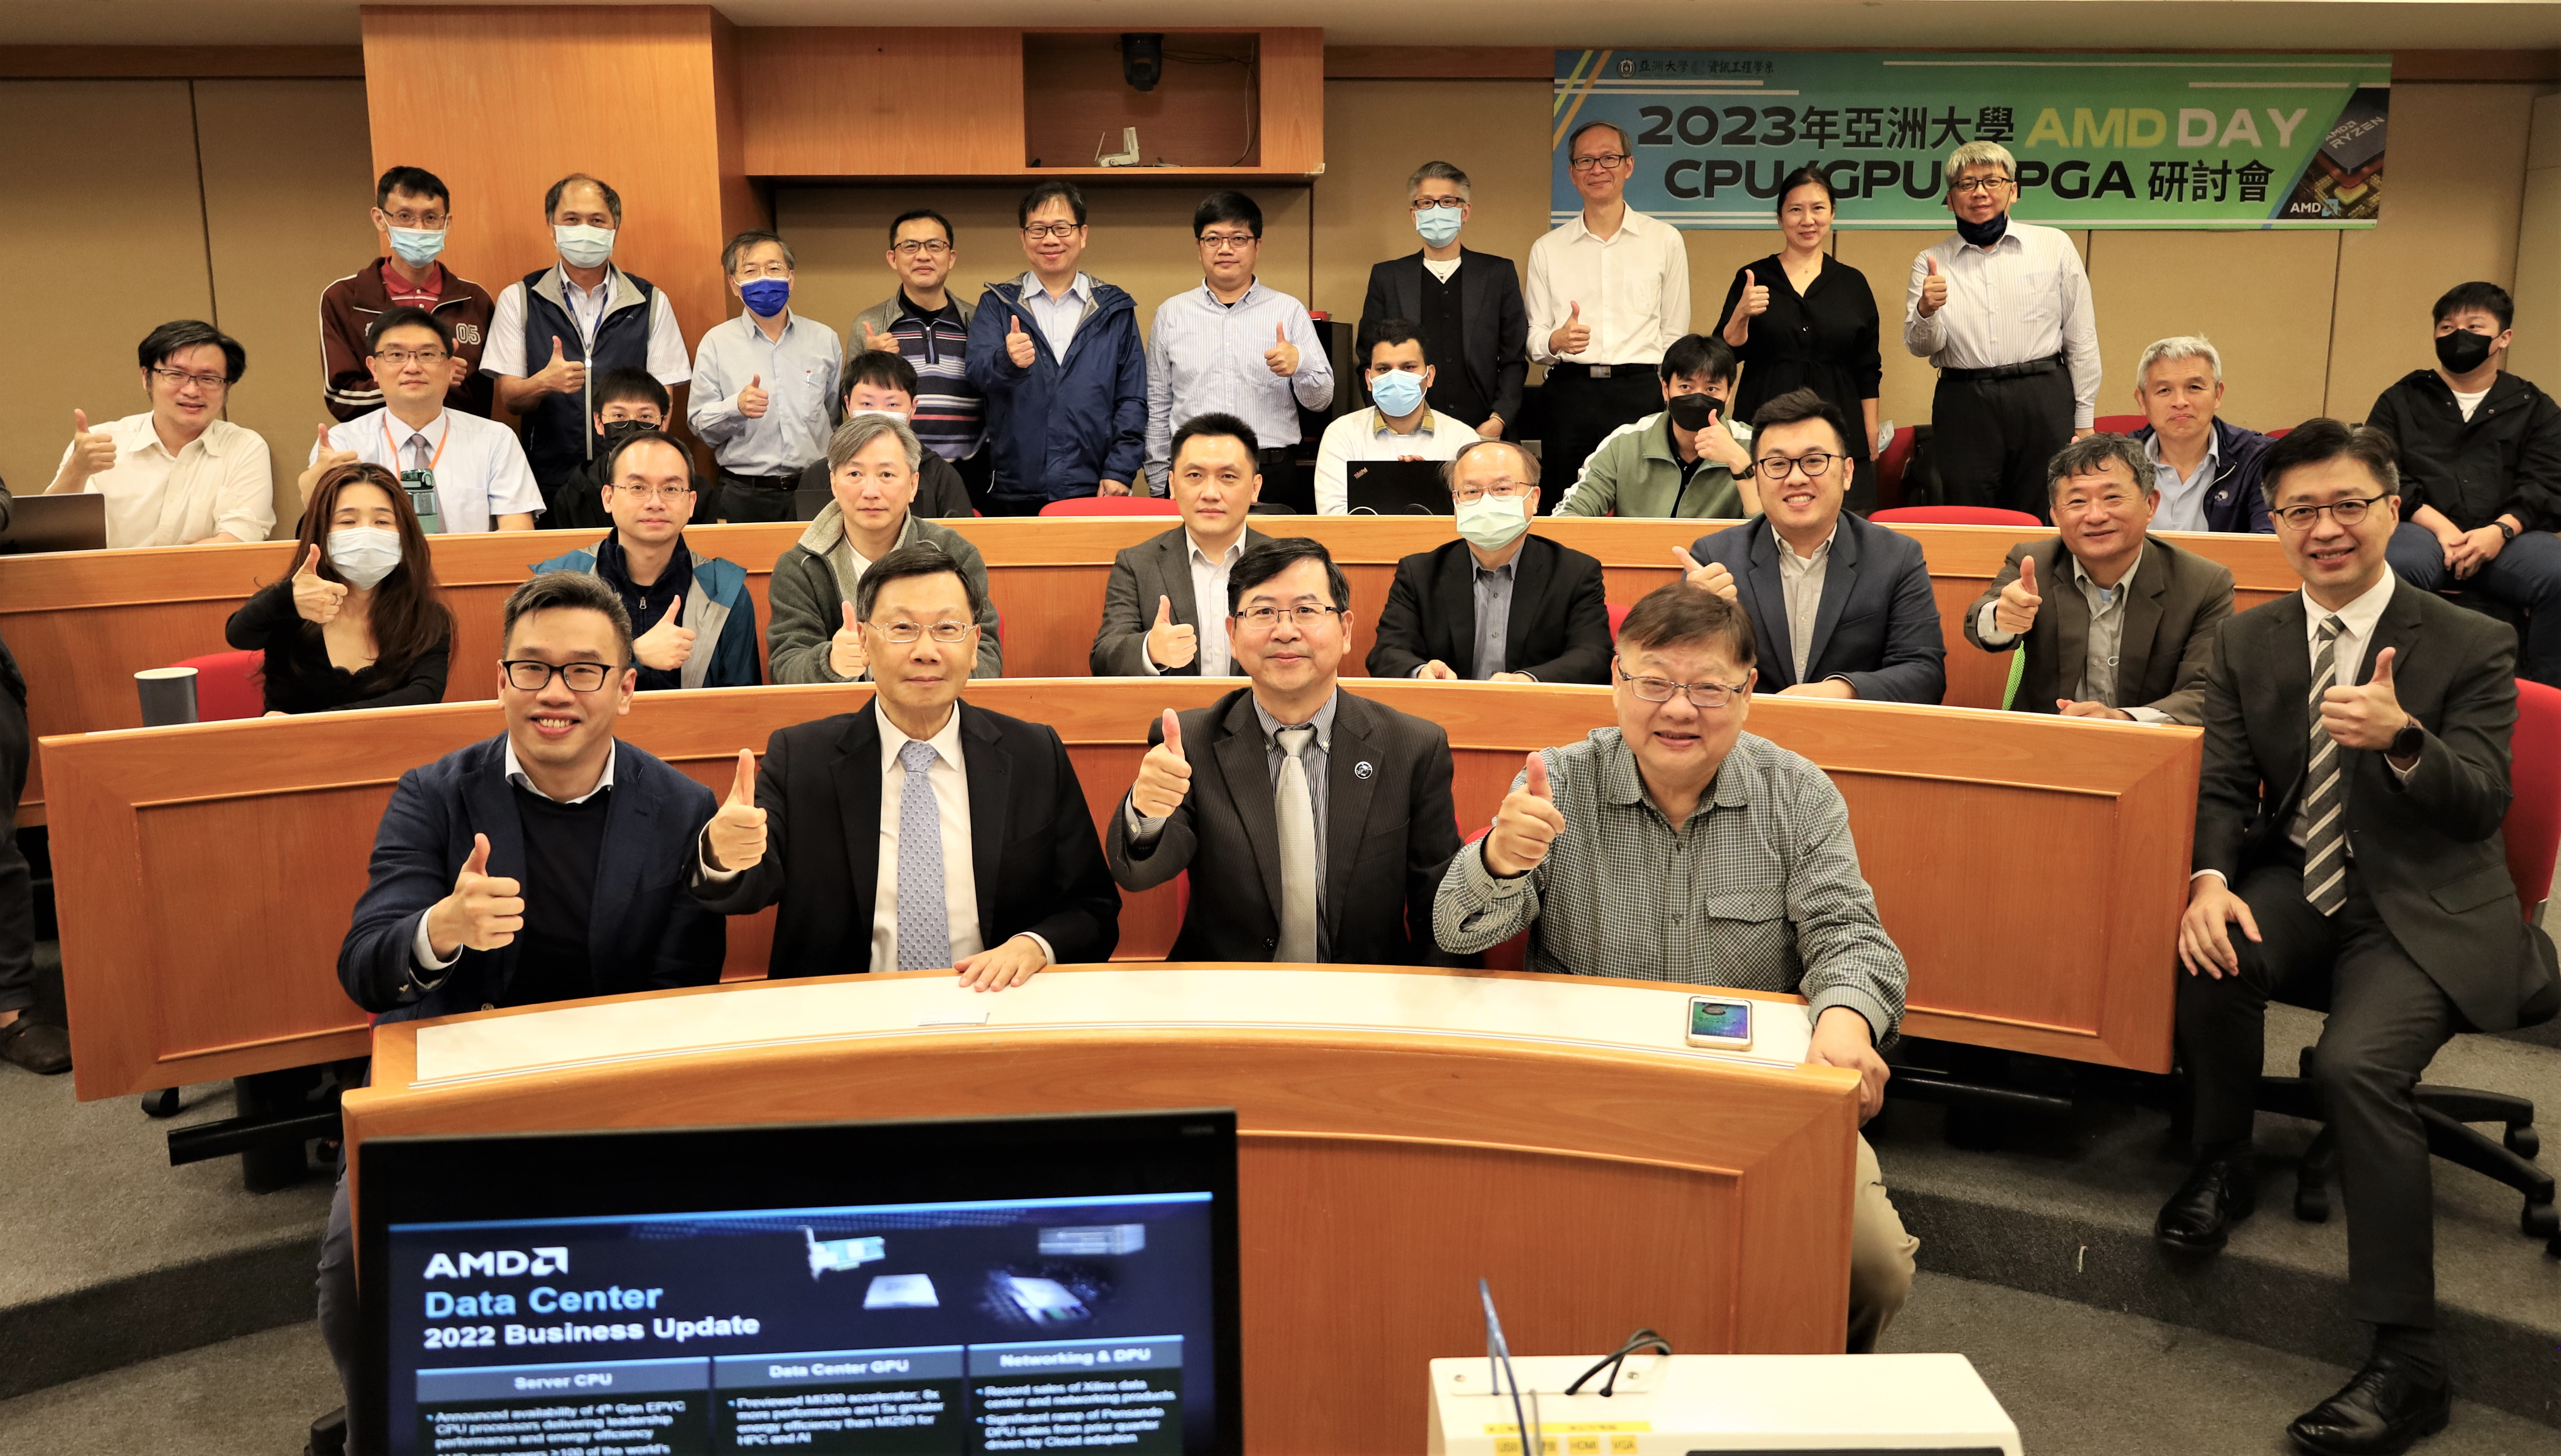 圖為亞大舉辦首場國內大學的「AMD DAY」，亞大校長蔡進發(左2)、超微台灣分公司資深業務副總林建誠(左3)、亞大講座教授黃光彩(左4)，和參與的亞大師生合影。